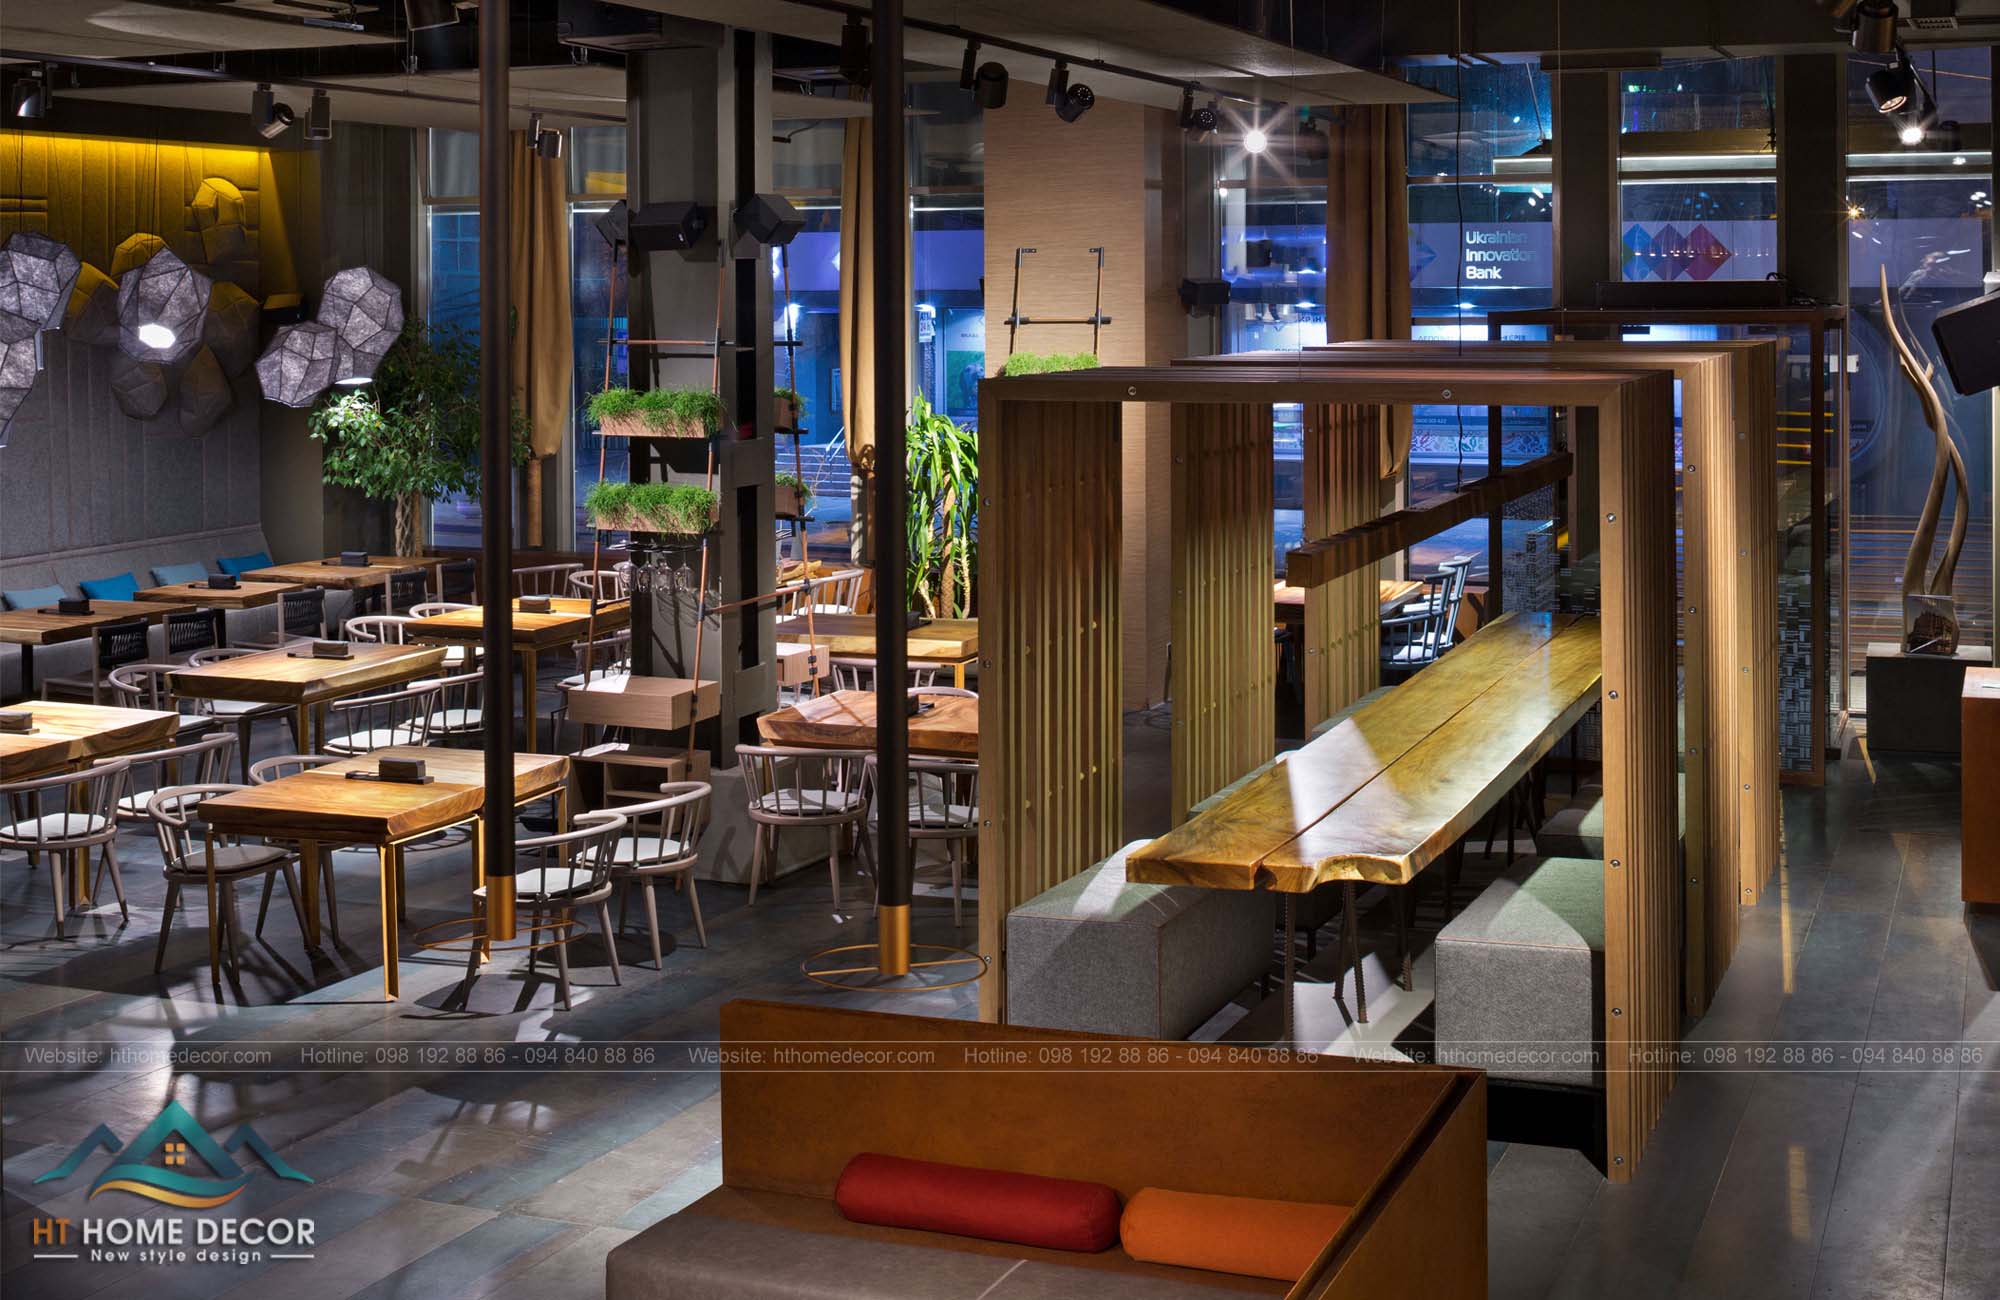 Bàn ghế từ khối lượng rắn gỗ sồi, điều này mang đến sự hiện đại và tăng thêm sự trang trọng cho nhà hàng.